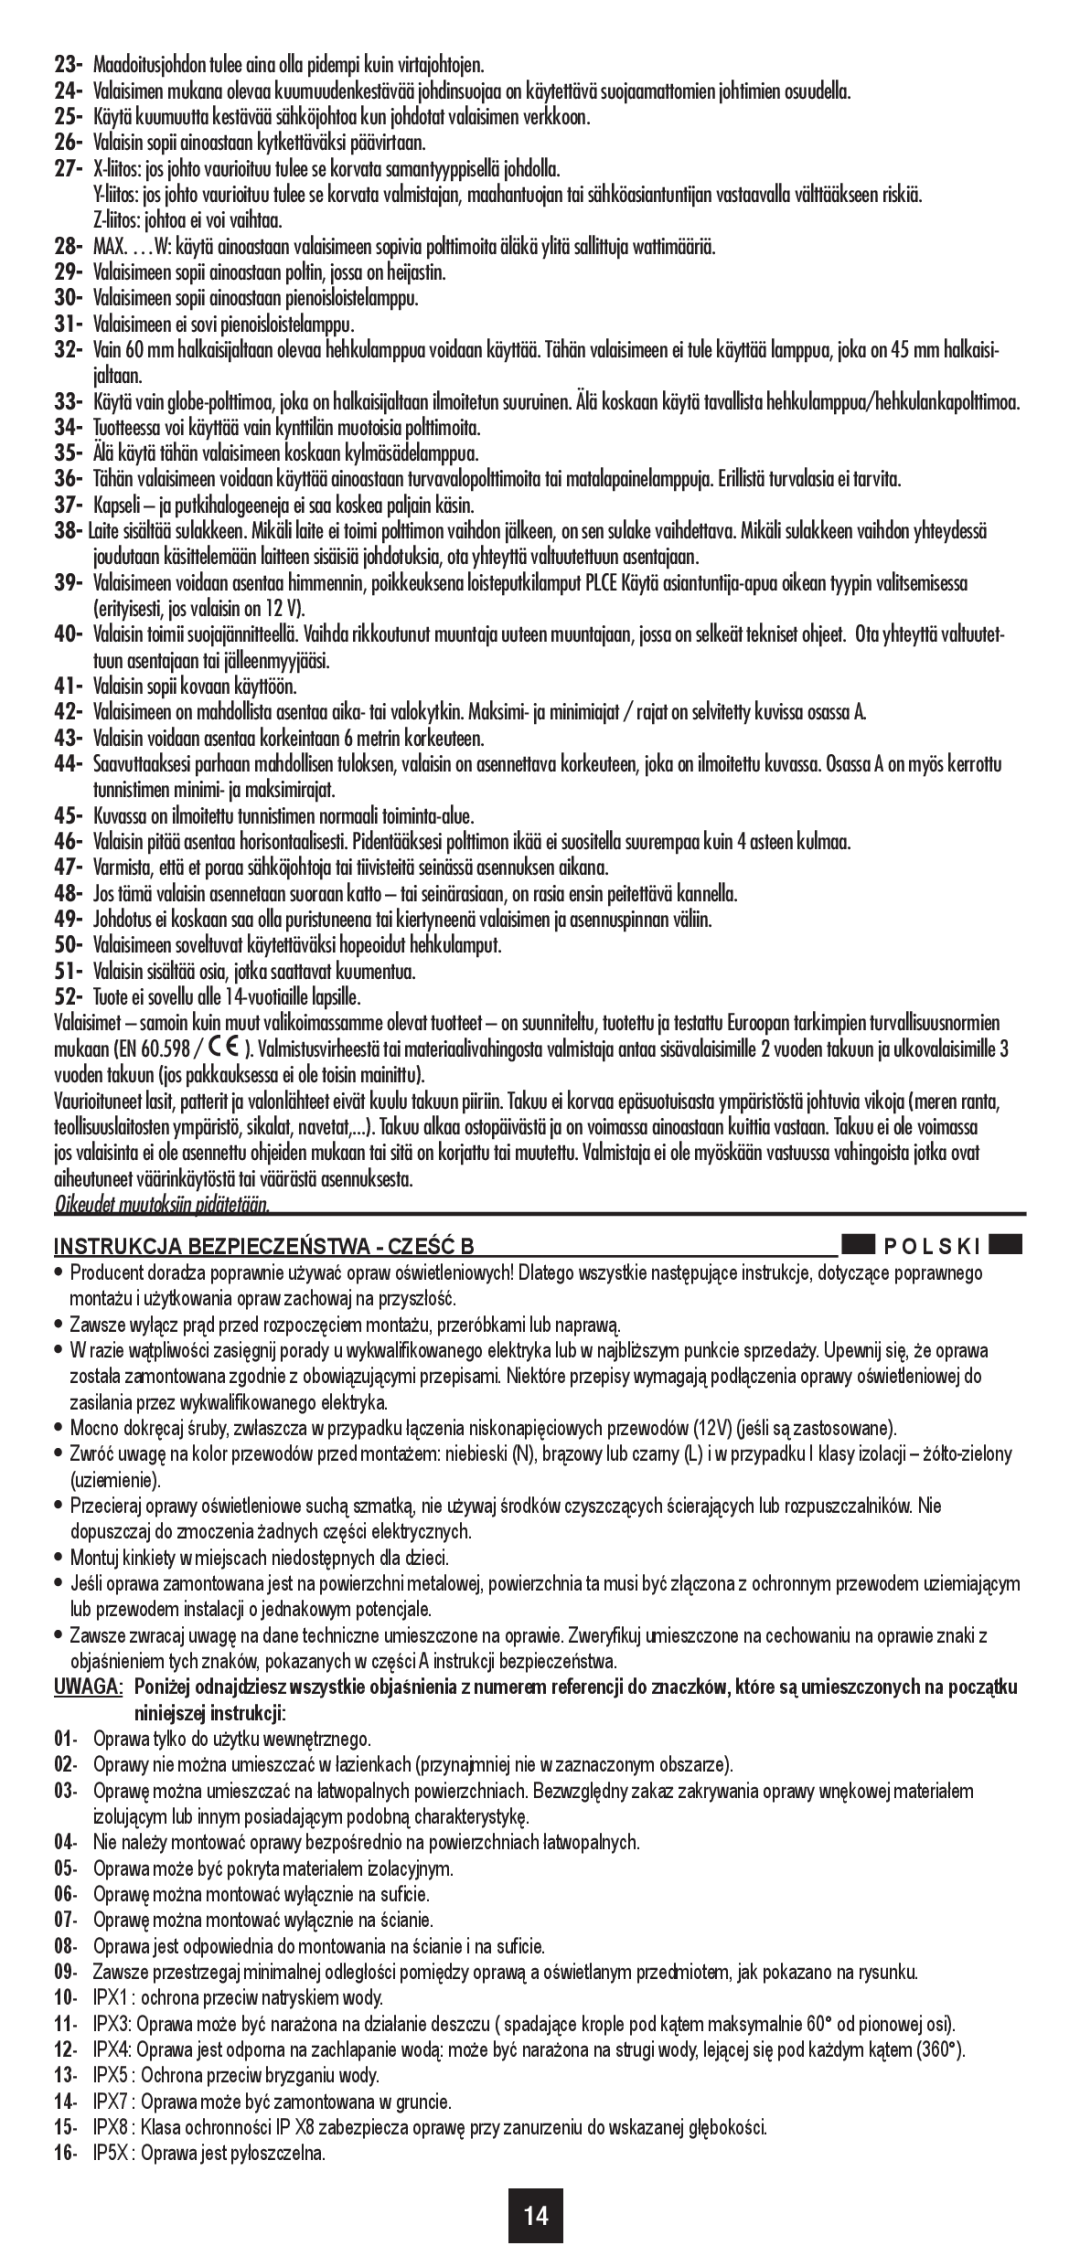 Philips 30185/**/16 user manual Oikeudet muutoksiin pidätetään, Instrukcja Bezpieczeństwa - Cześć B 